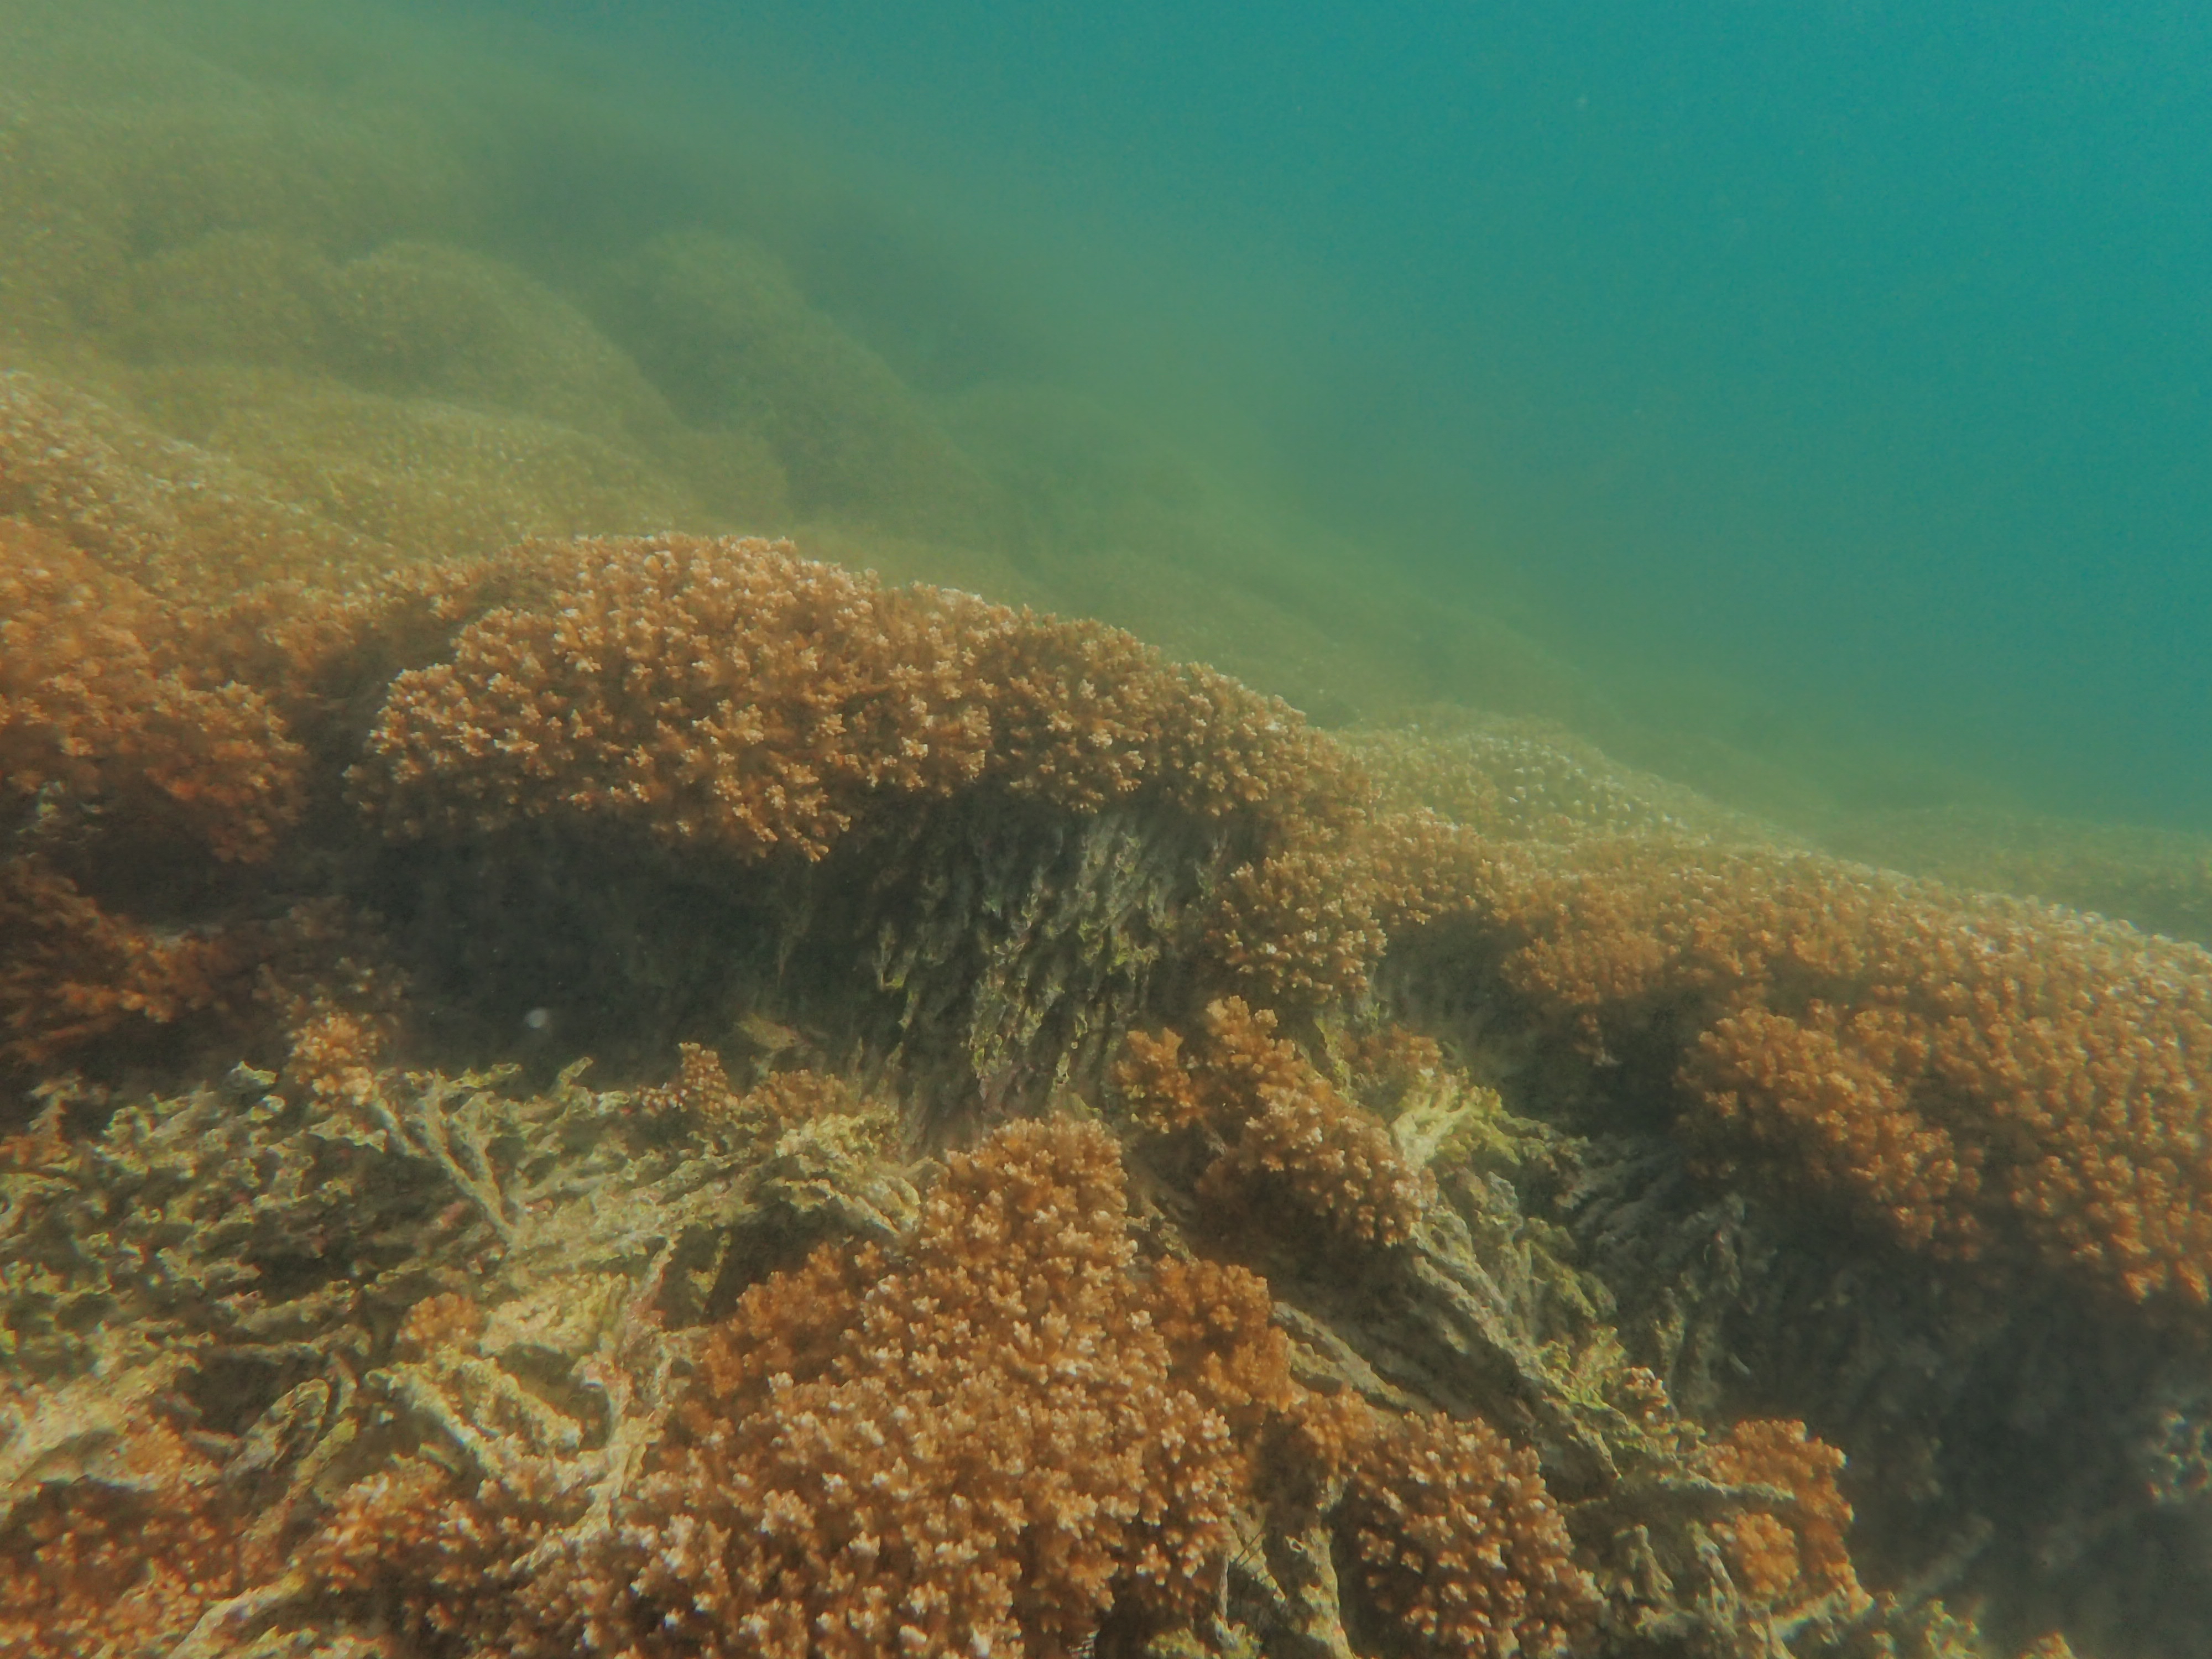 Pocillopora reef framework. Pocillopora coral reef accretion at Isla San Pedro in Las Perlas, Panamá.